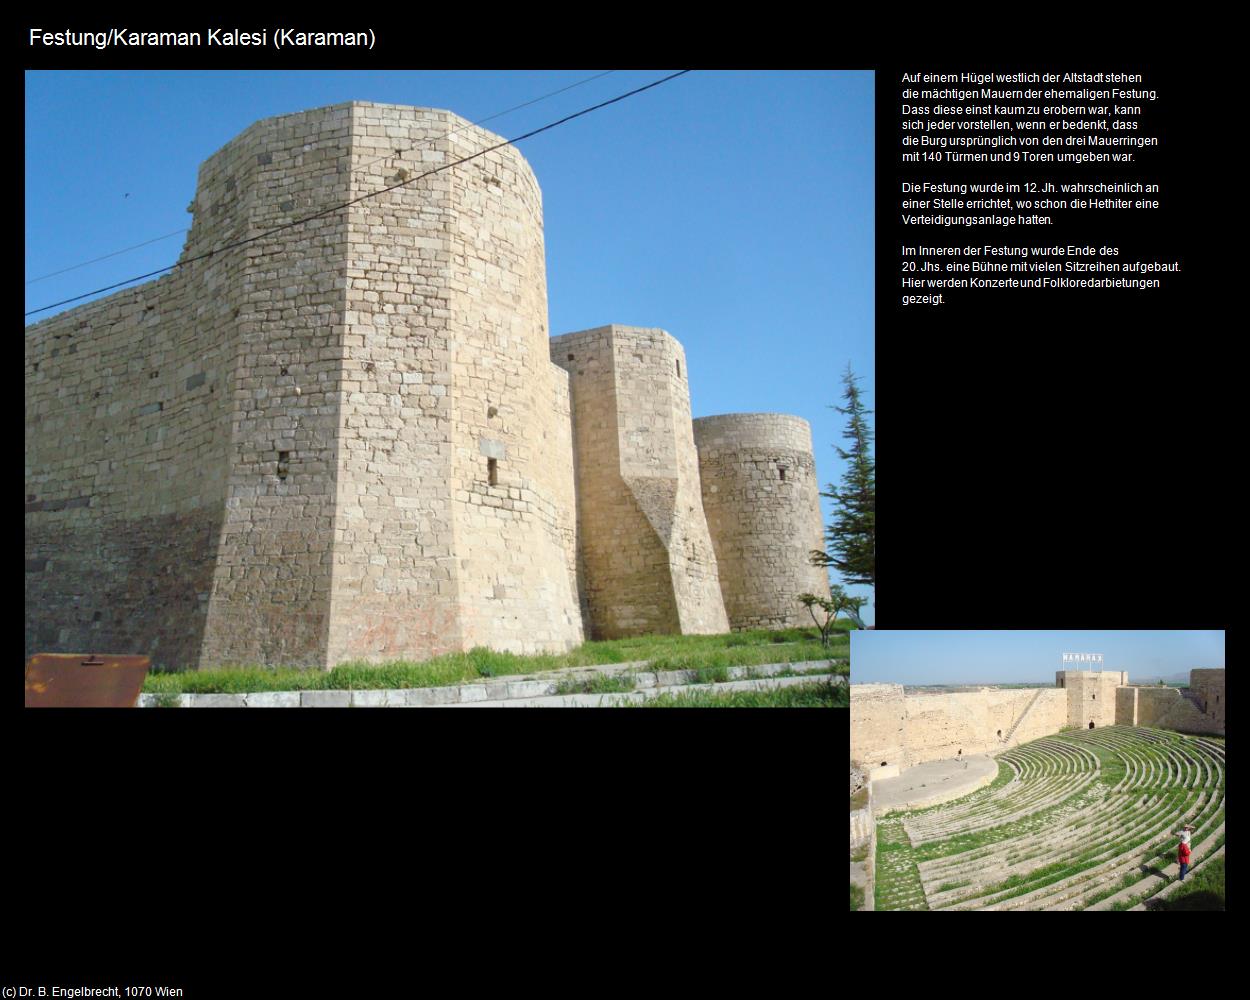 Festung/Kalesi (Karaman) in TÜRKEI